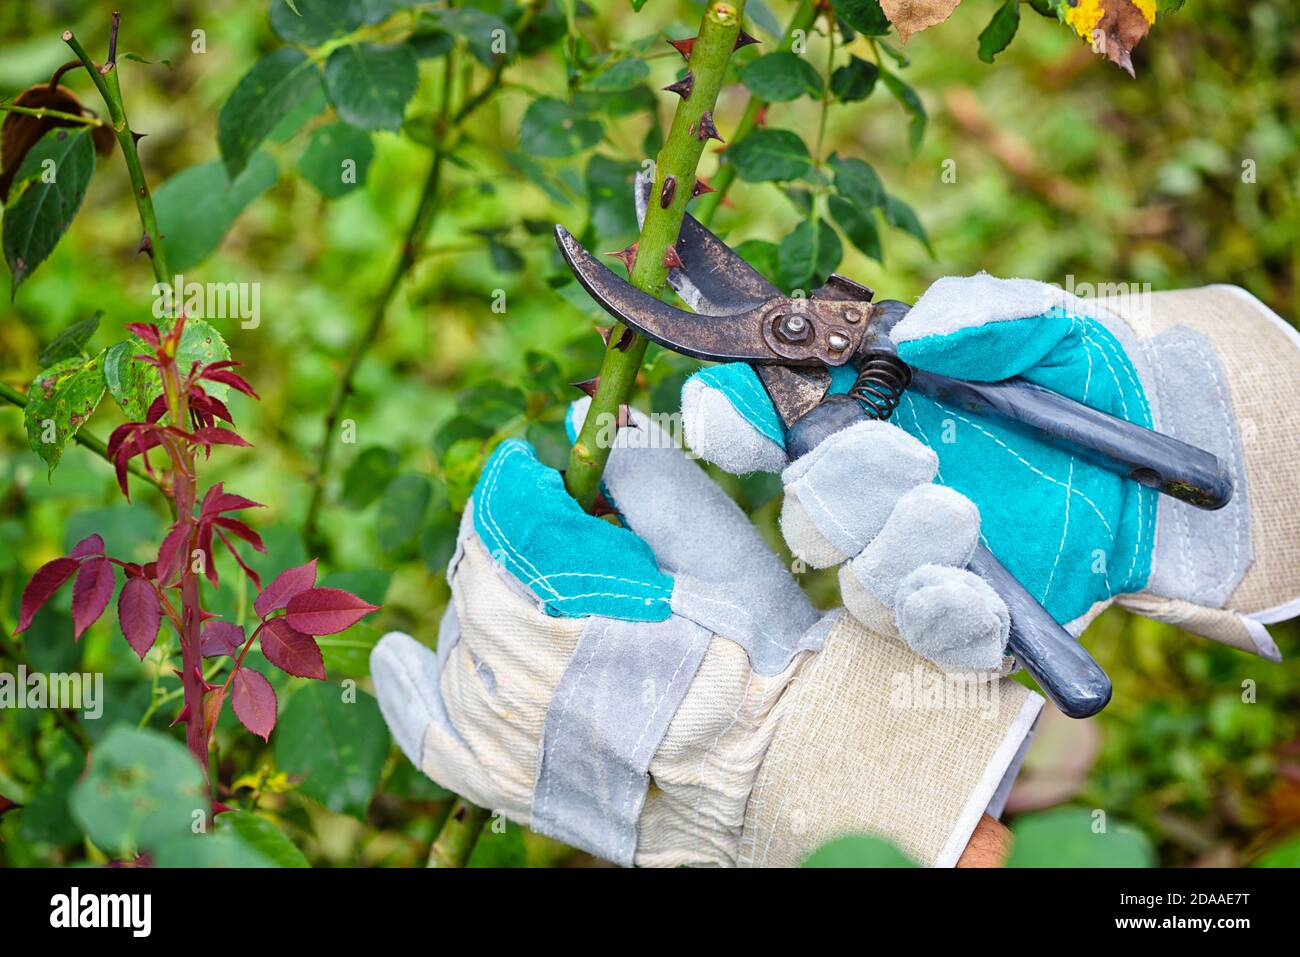 Poda rosas en el jardín, las manos del jardinero con secateurs Foto de stock